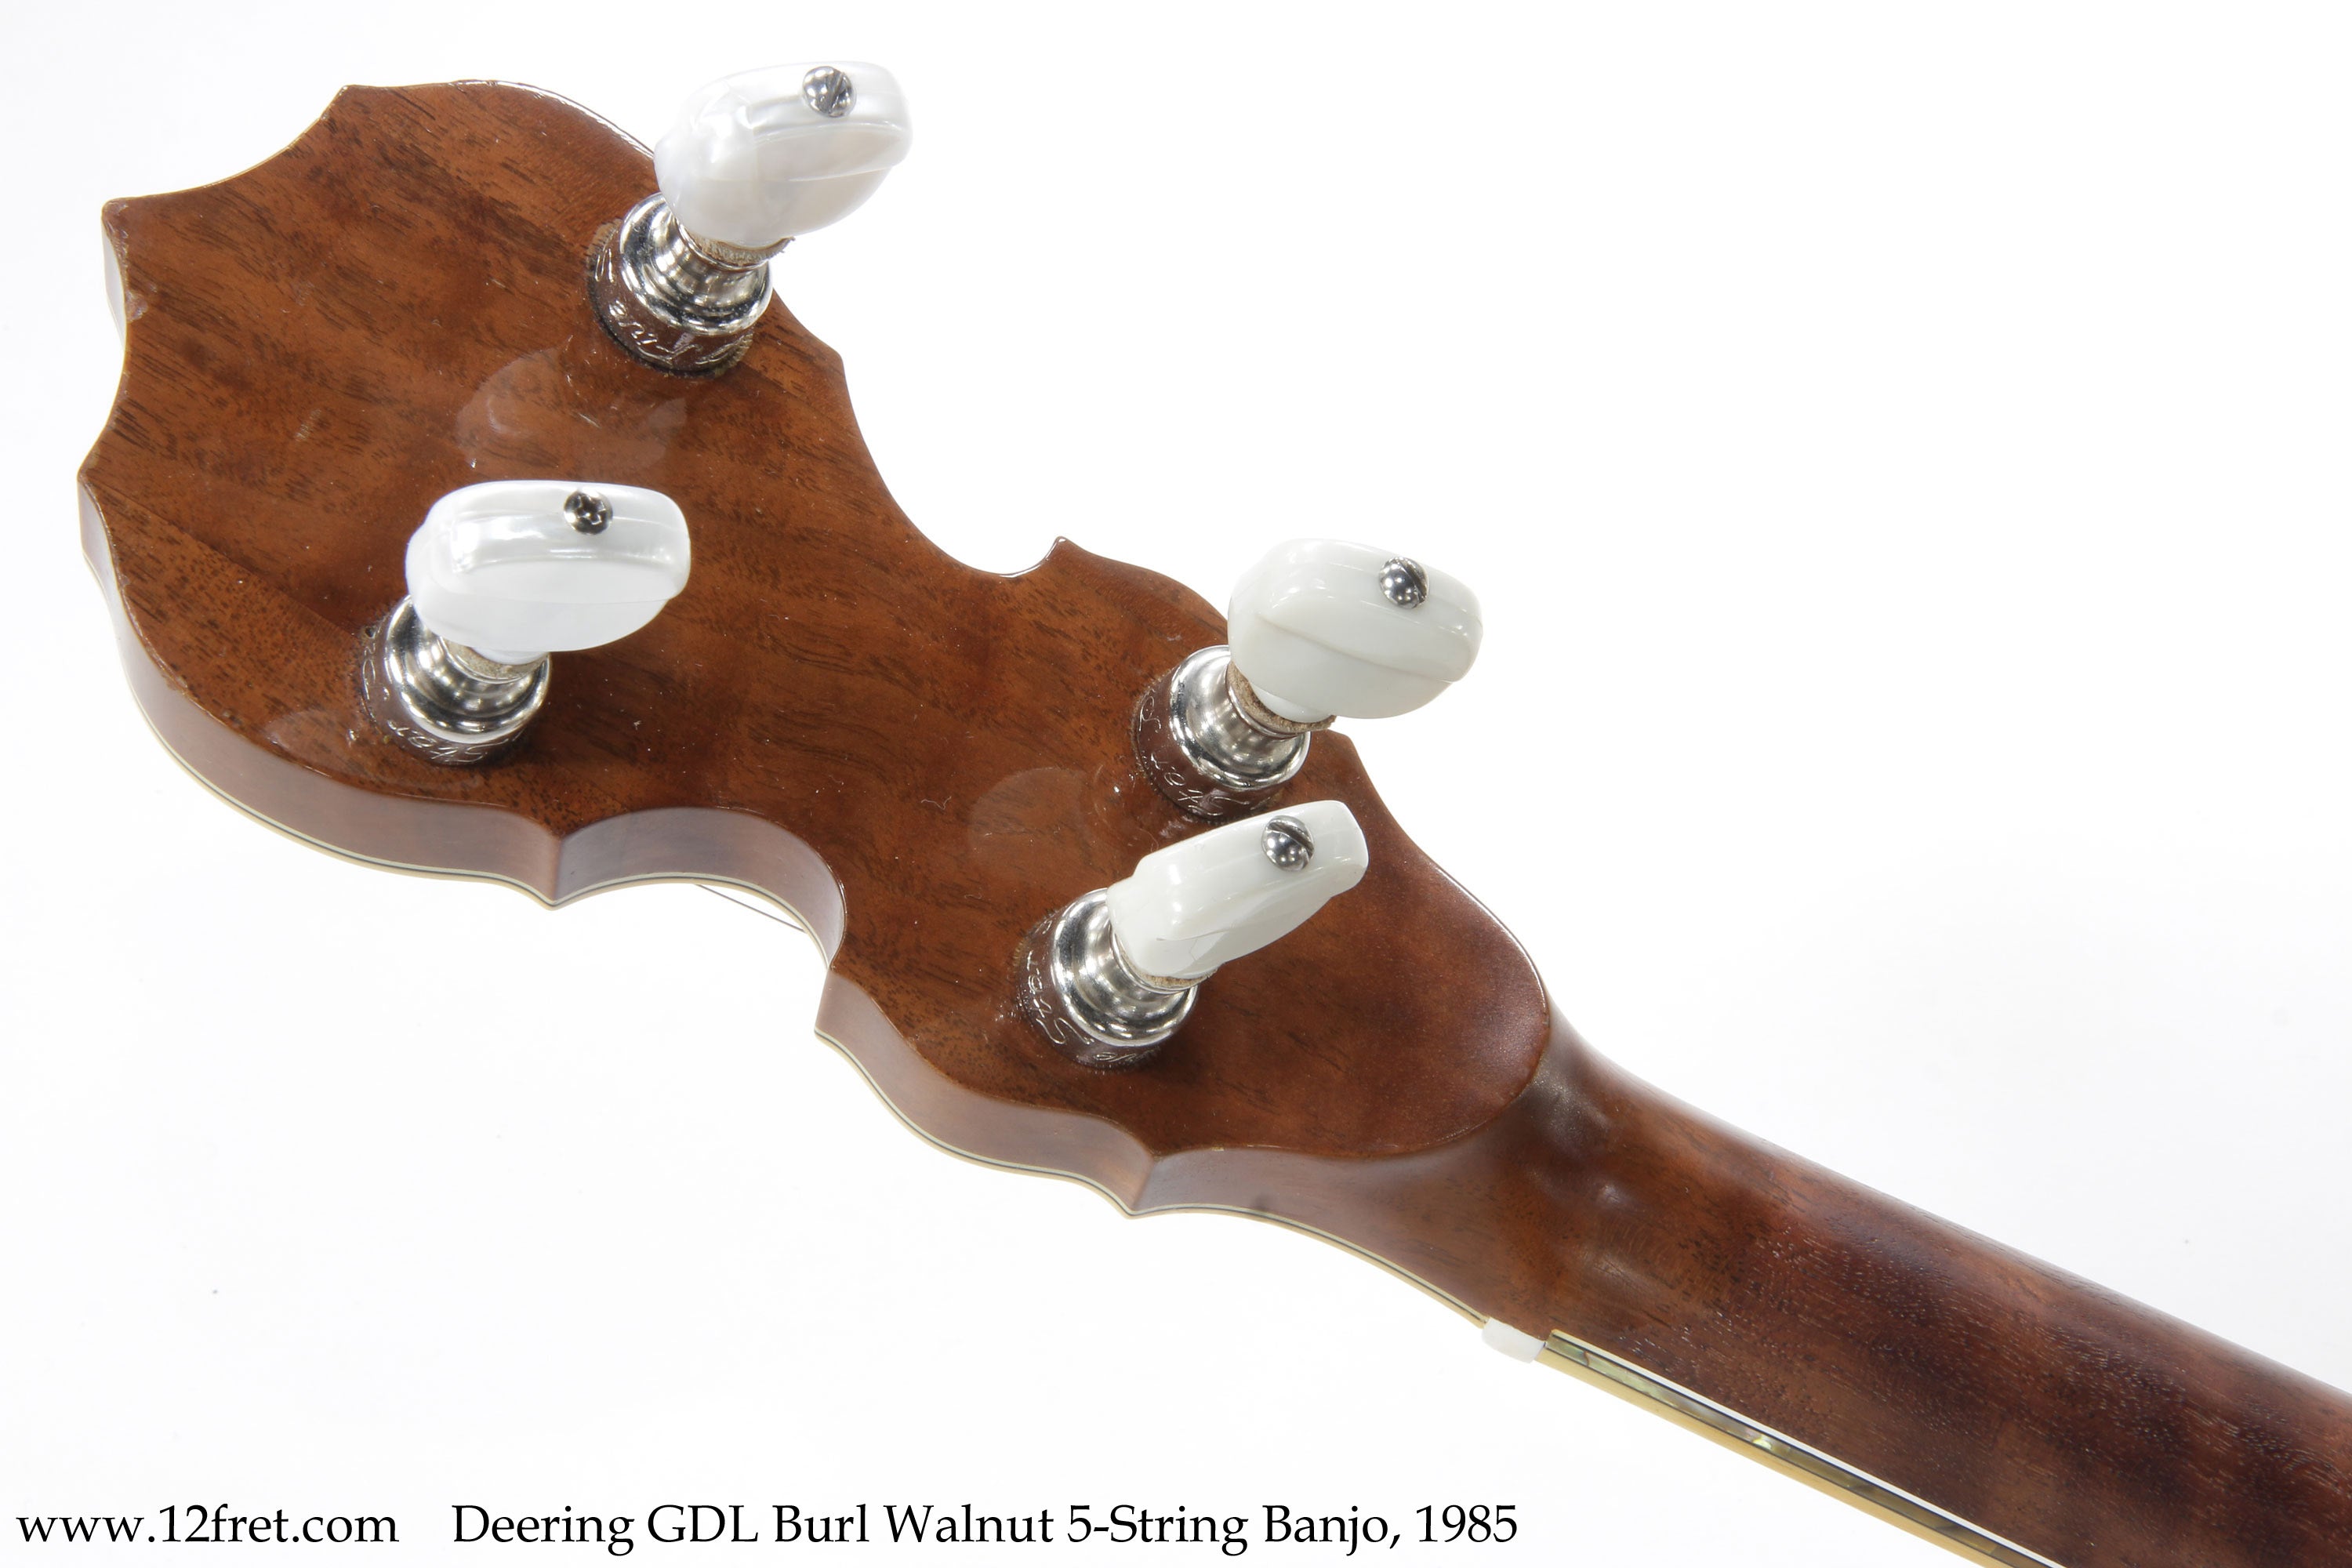 Deering GDL Burl Walnut 5-String Banjo, 1985 - The Twelfth Fret